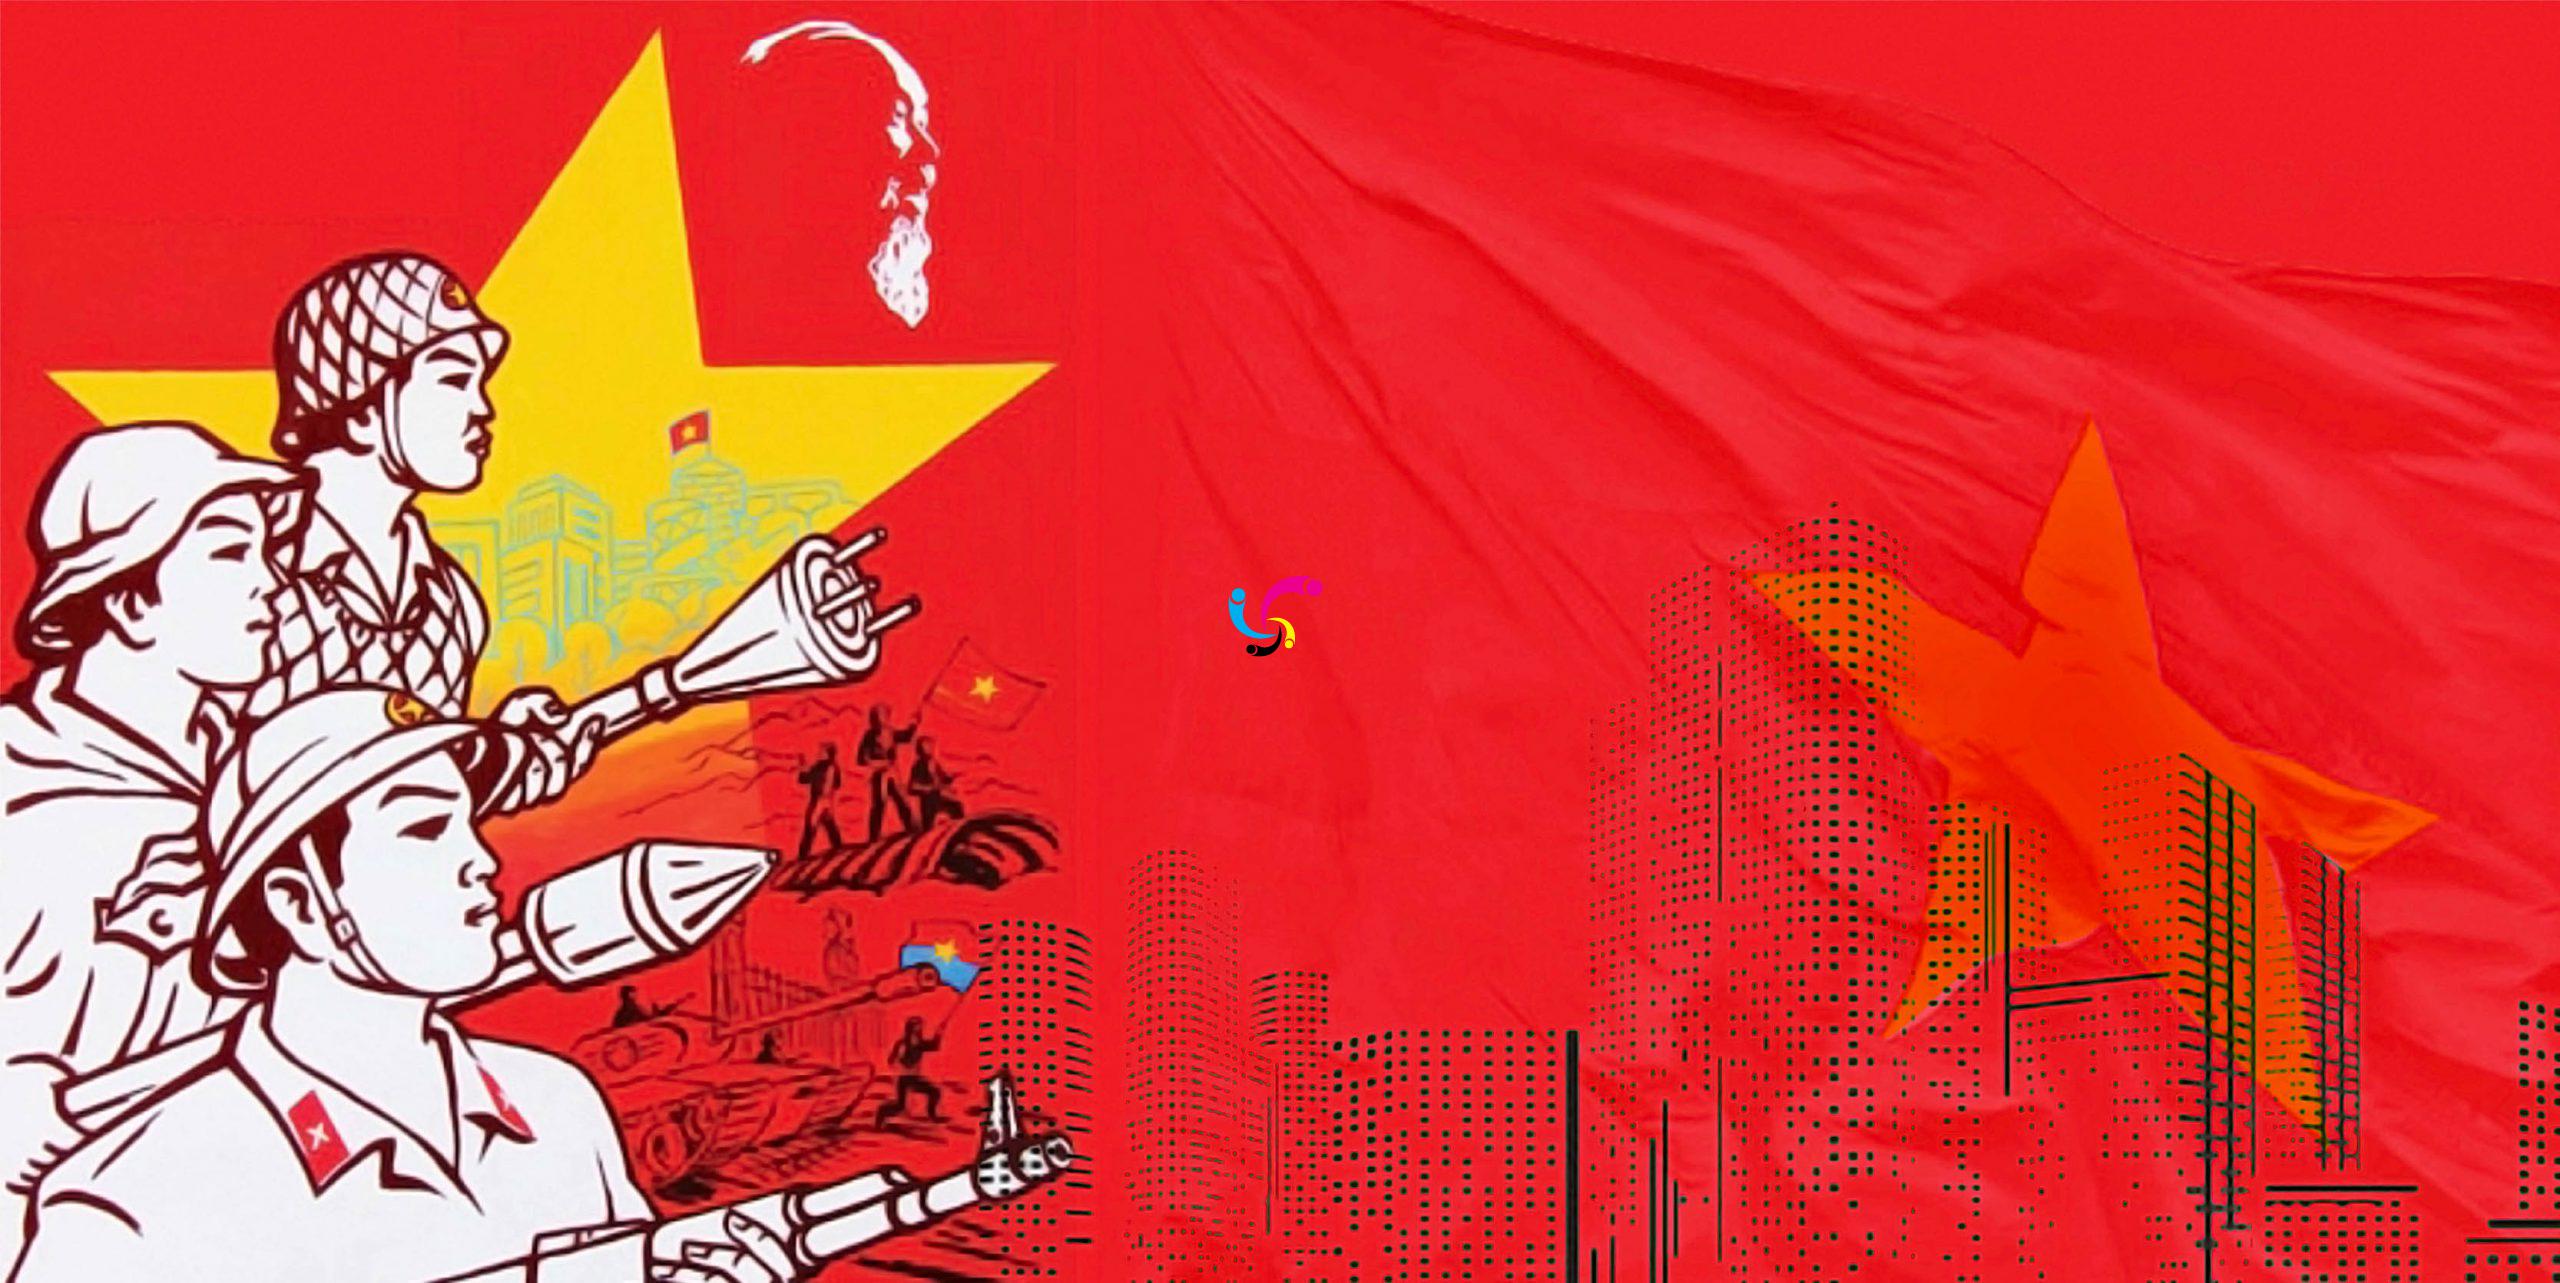 Lá cờ Việt Nam: Lá cờ Việt Nam ghi lại nhiều giá trị văn hóa mang tính lịch sử của dân tộc Việt Nam. Năm 2024, lá cờ Việt Nam vẫn được coi là biểu tượng to lớn của sự đoàn kết và tự hào. Chúng tôi hy vọng những hình ảnh này sẽ mang lại cho bạn cảm giác yêu đất nước và lòng trung thành đối với lá cờ của Việt Nam.